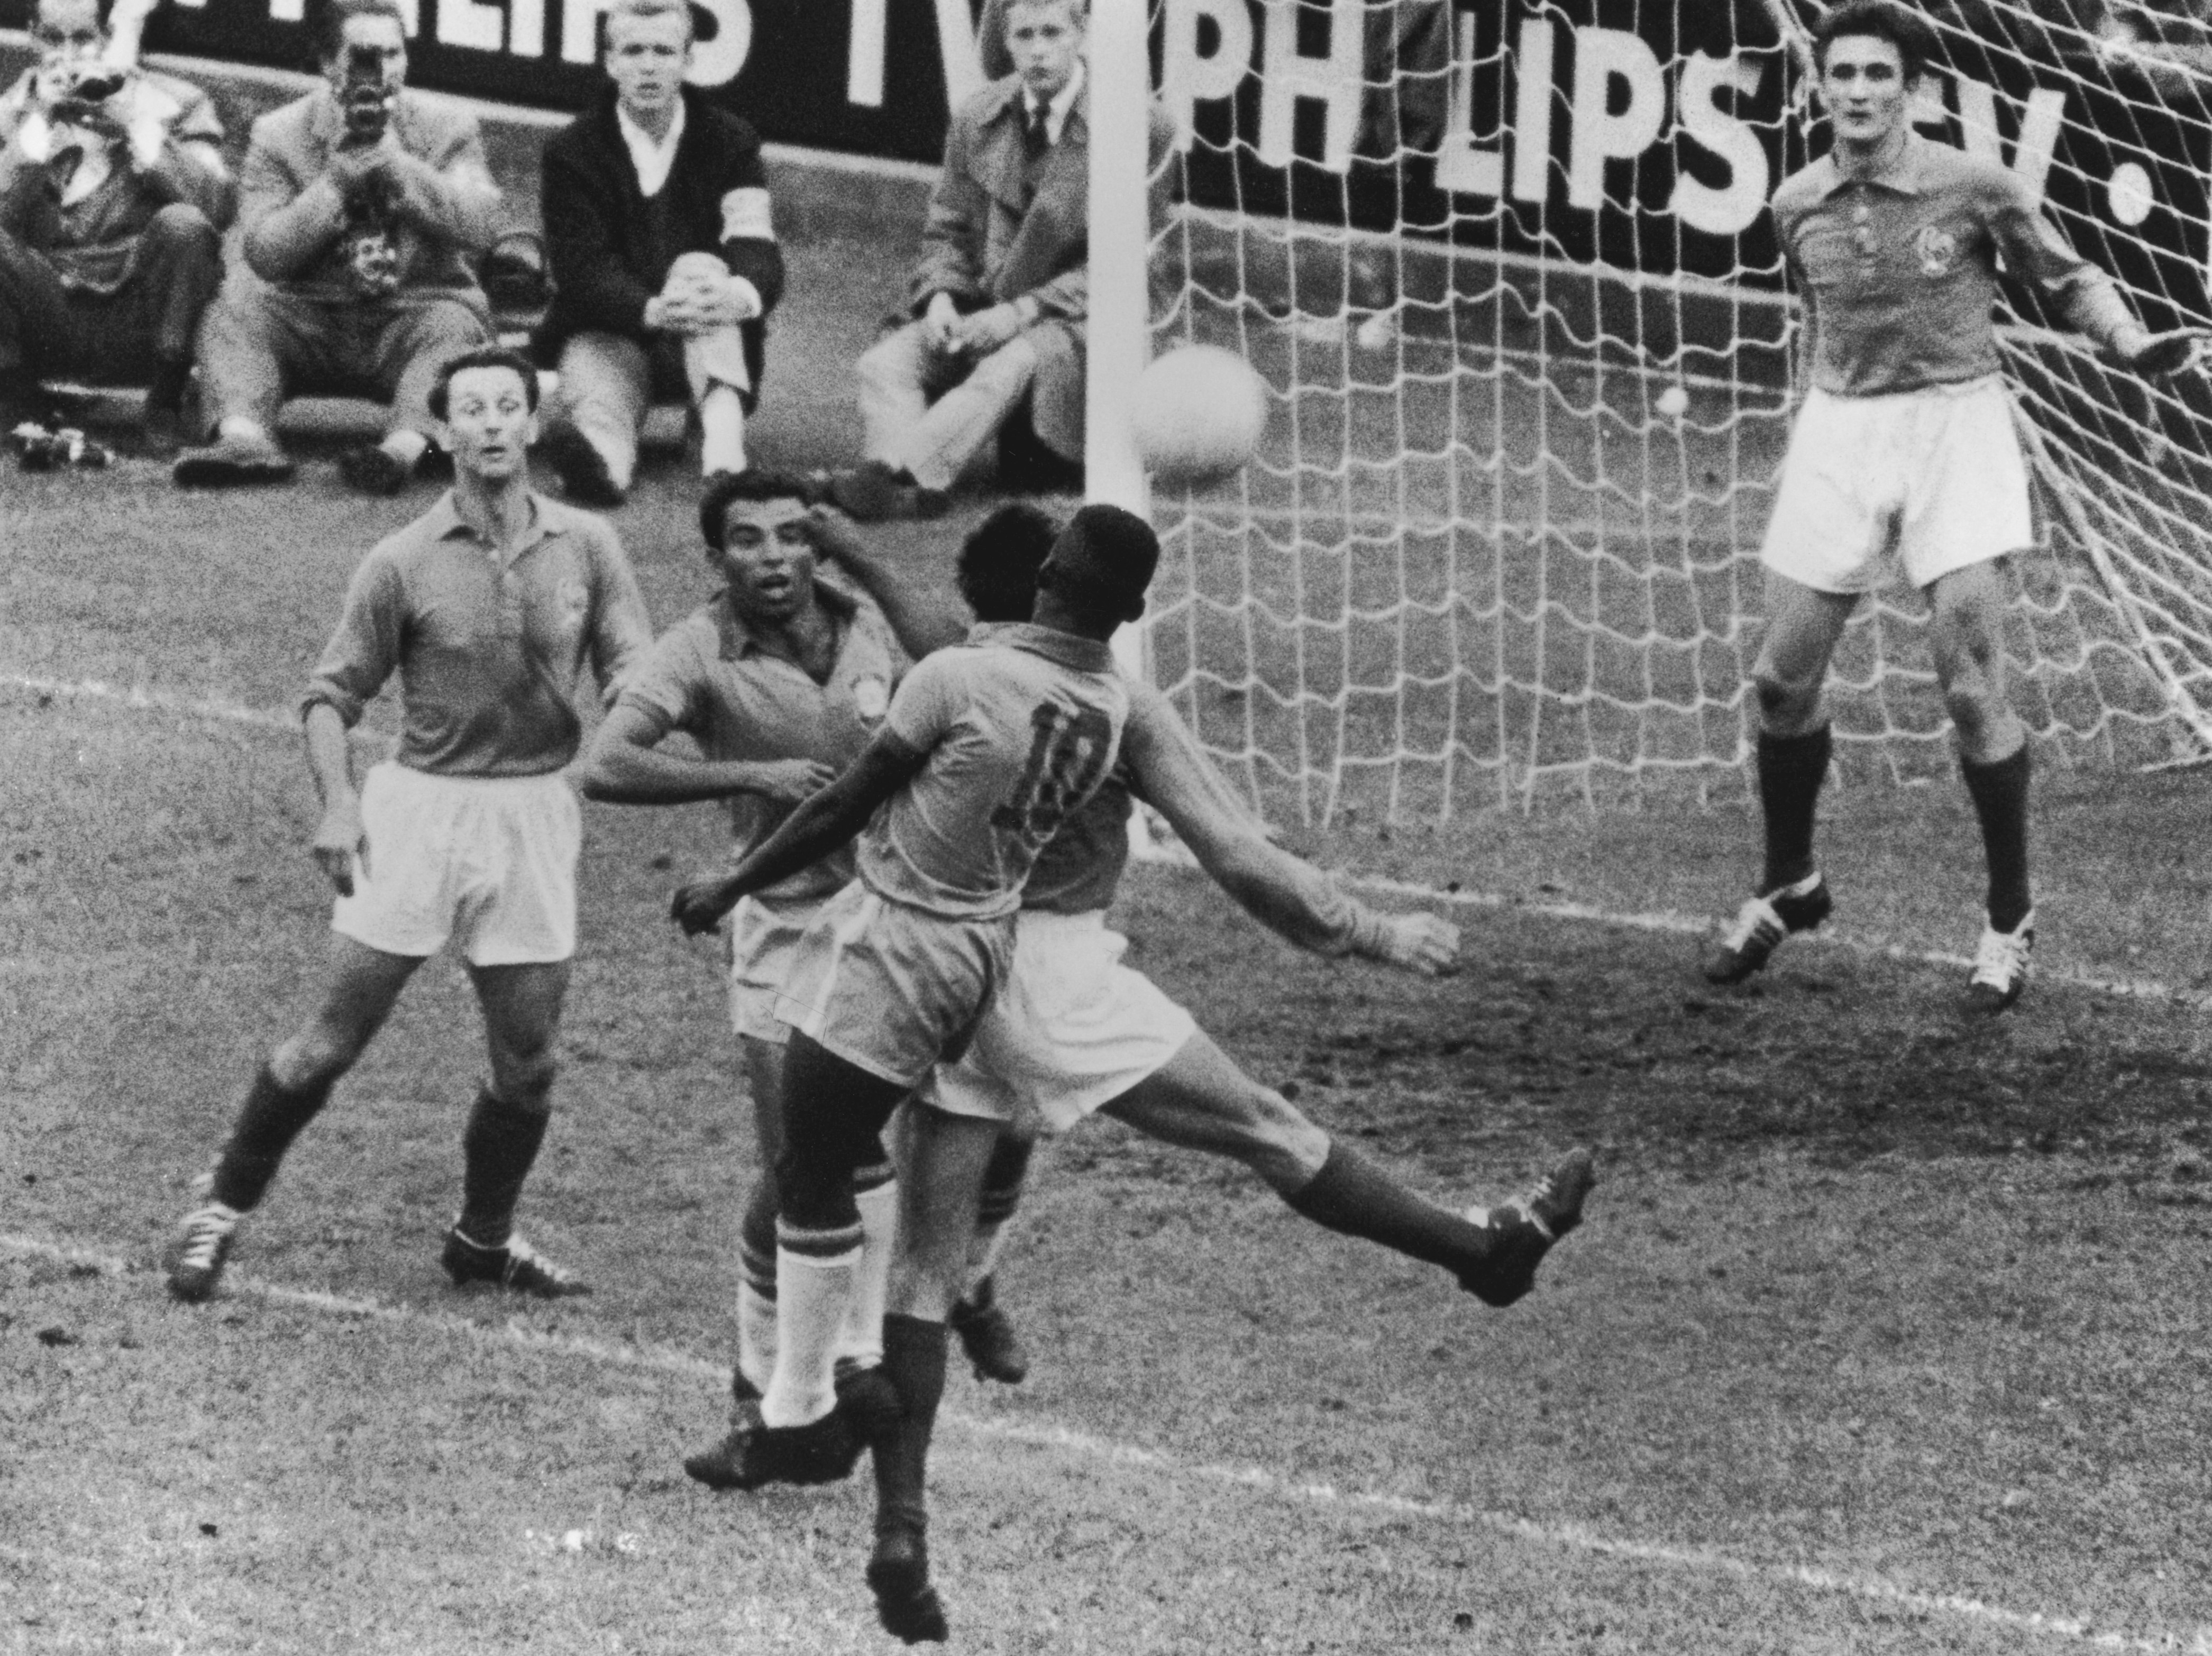 Una fase di gioco della semifinale del mondiale del 1958 tra Francia e Brasile. La partita viene vinta dal Brasile per 5 a 2, con una tripletta messa a segno da Pelè